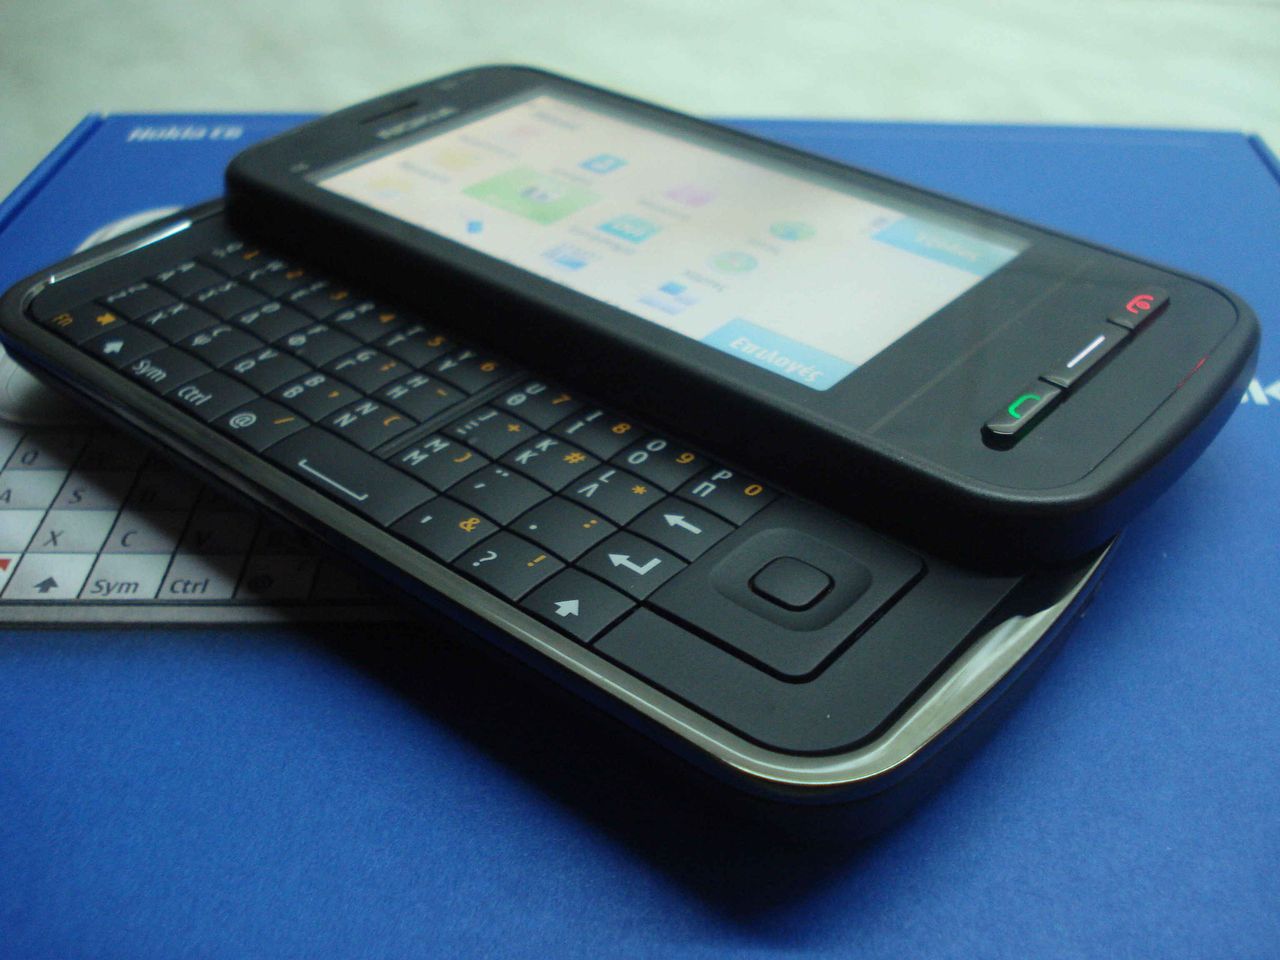 Nokia C6 - mój ideał dawnego smartfona. Wytrzymały, dobra bateria, ekran dotykowy i fizyczna klawiatura